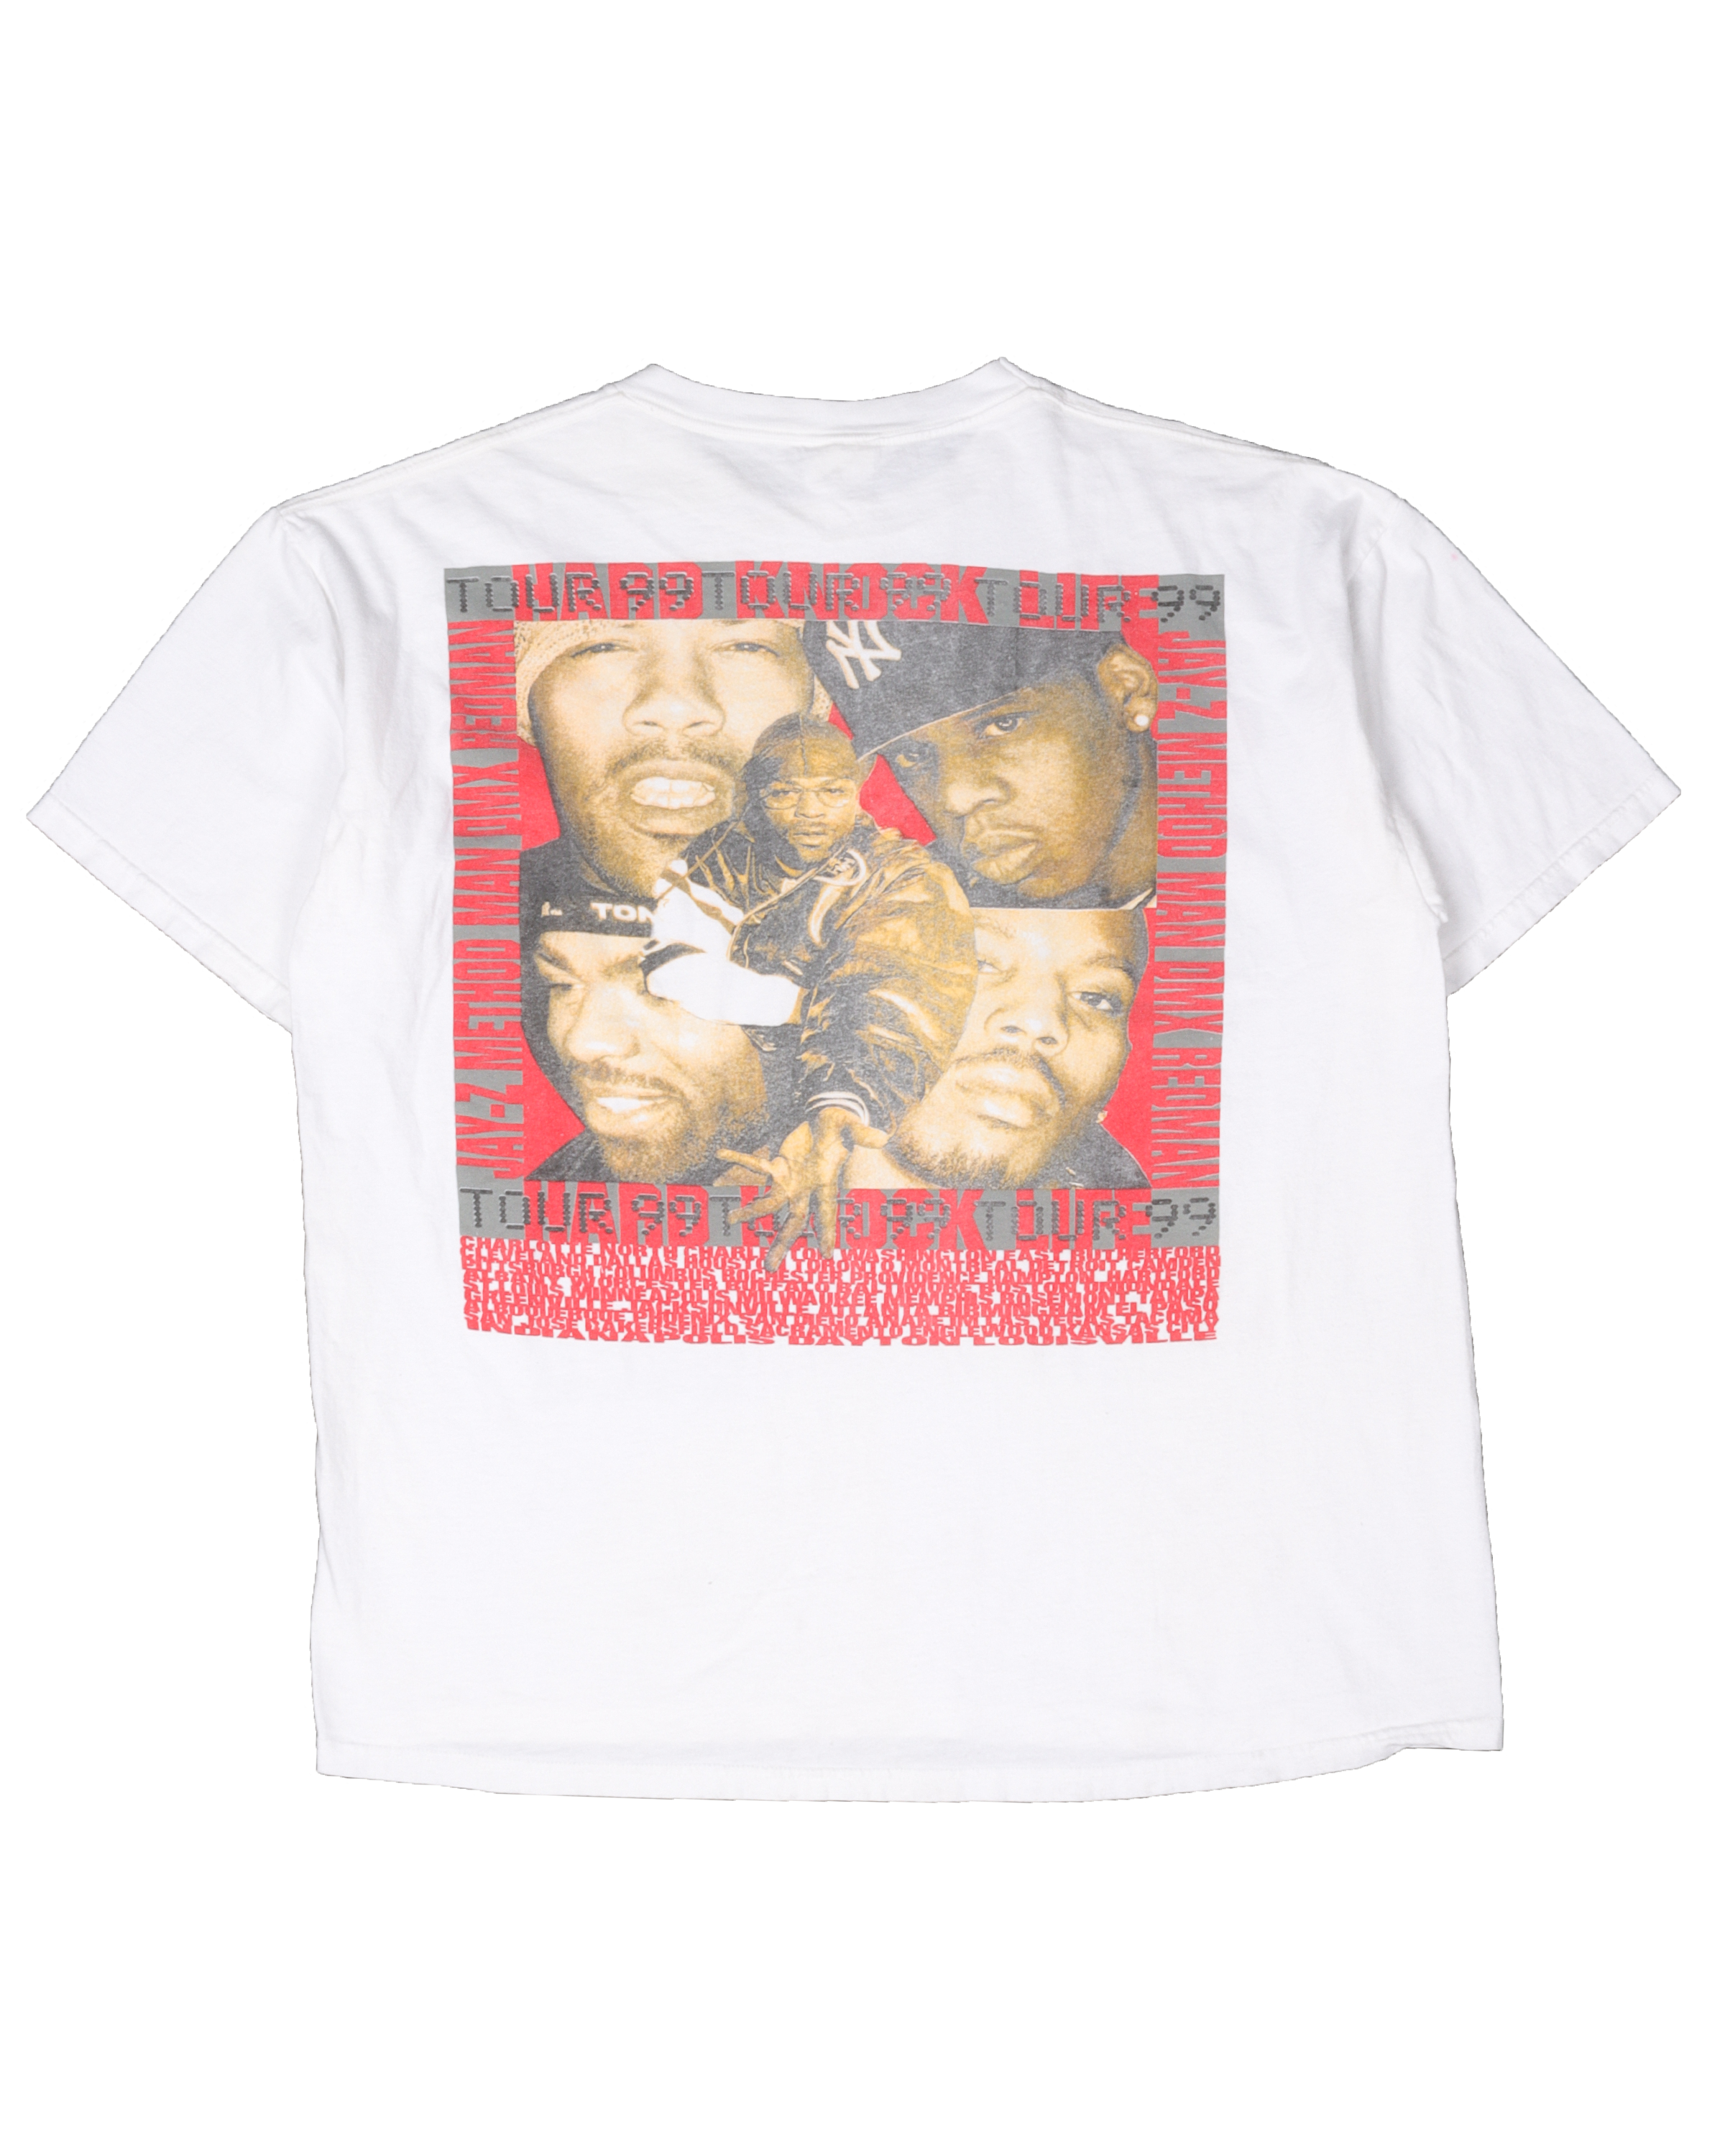 Jay-Z & DMX Hard Knock Life Tour T-Shirt